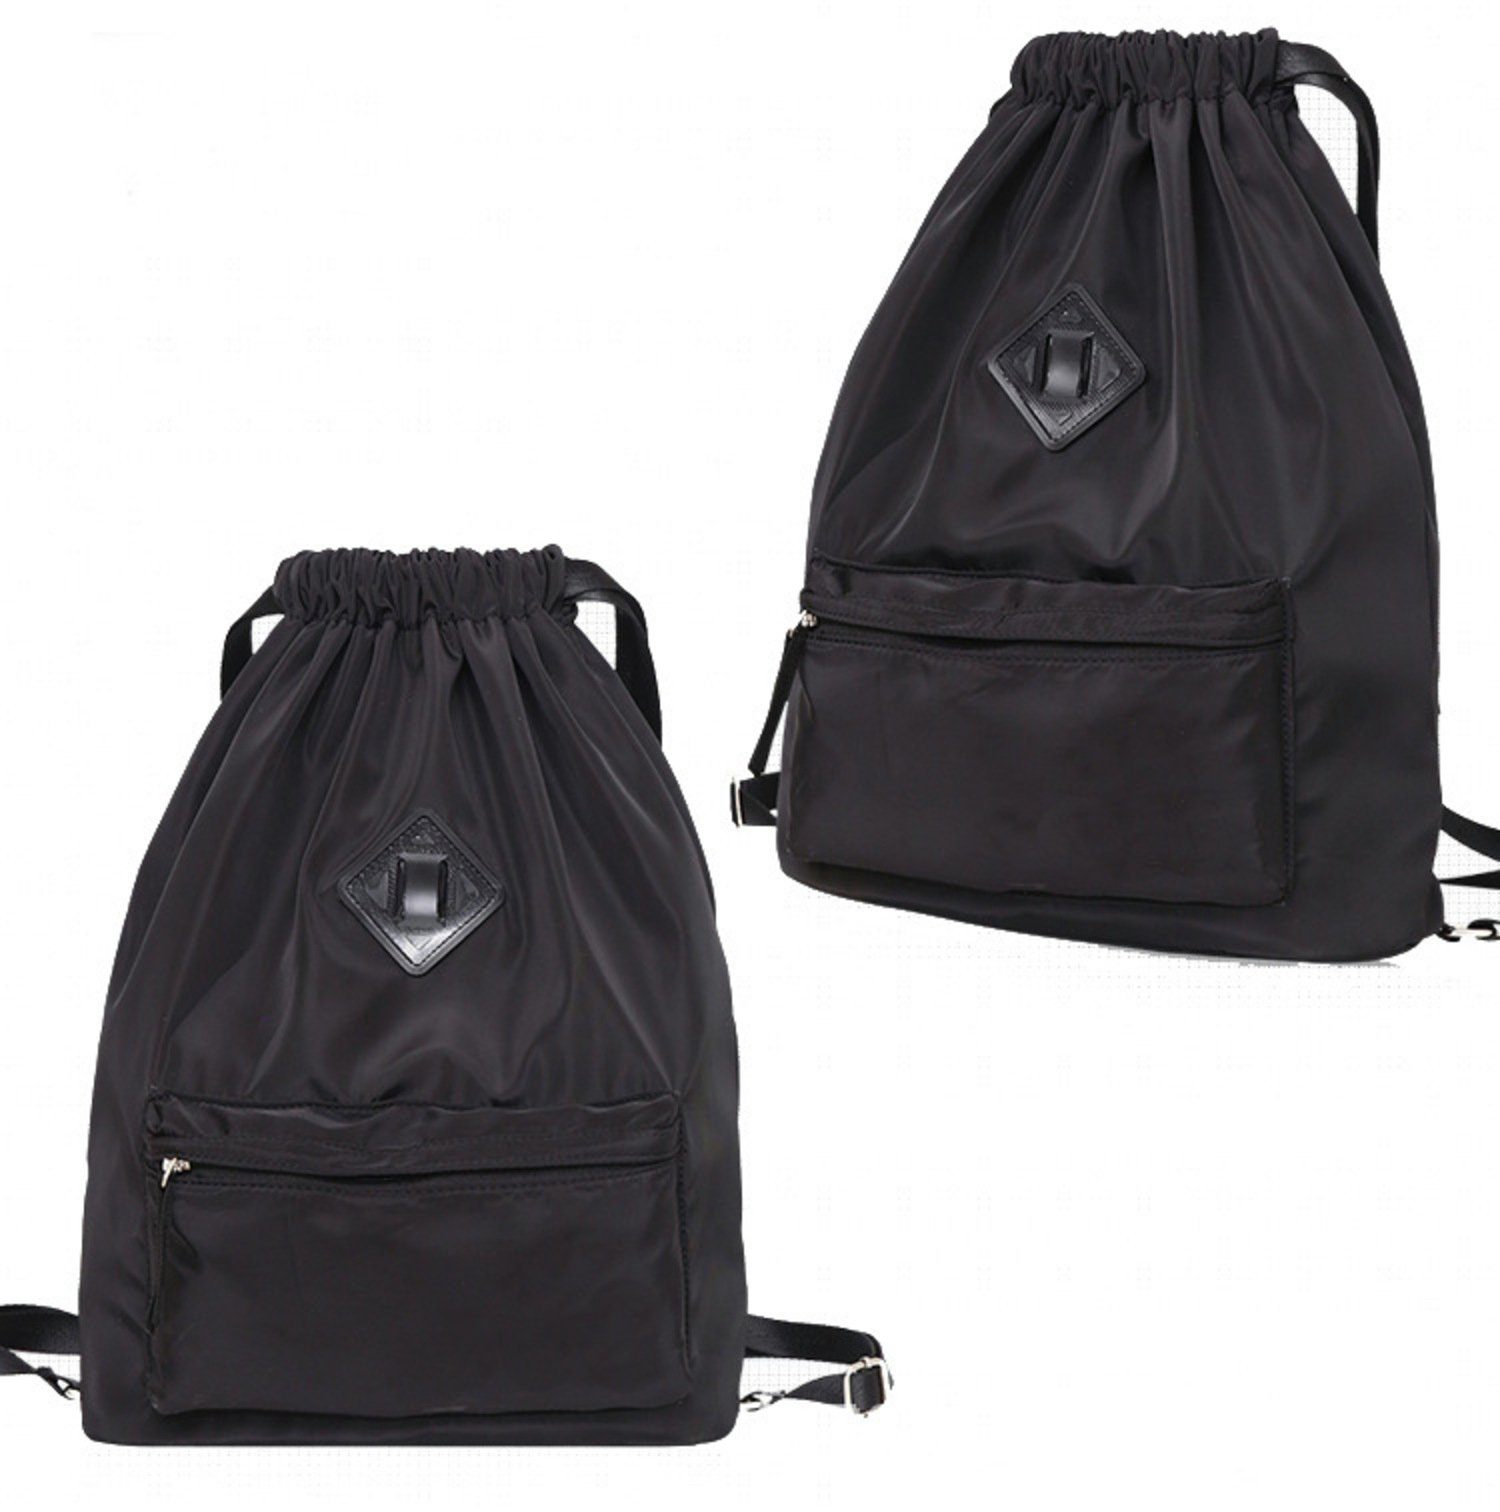 H-basics Rucksack Rucksack Tasche 43*40*15cm mit Kordel zum Zuziehen Turnbeutel mit Kordelzug für Kinder, Teenager oder Erwachsene - Unisex Sporttasche oder Schultasche Schwarz